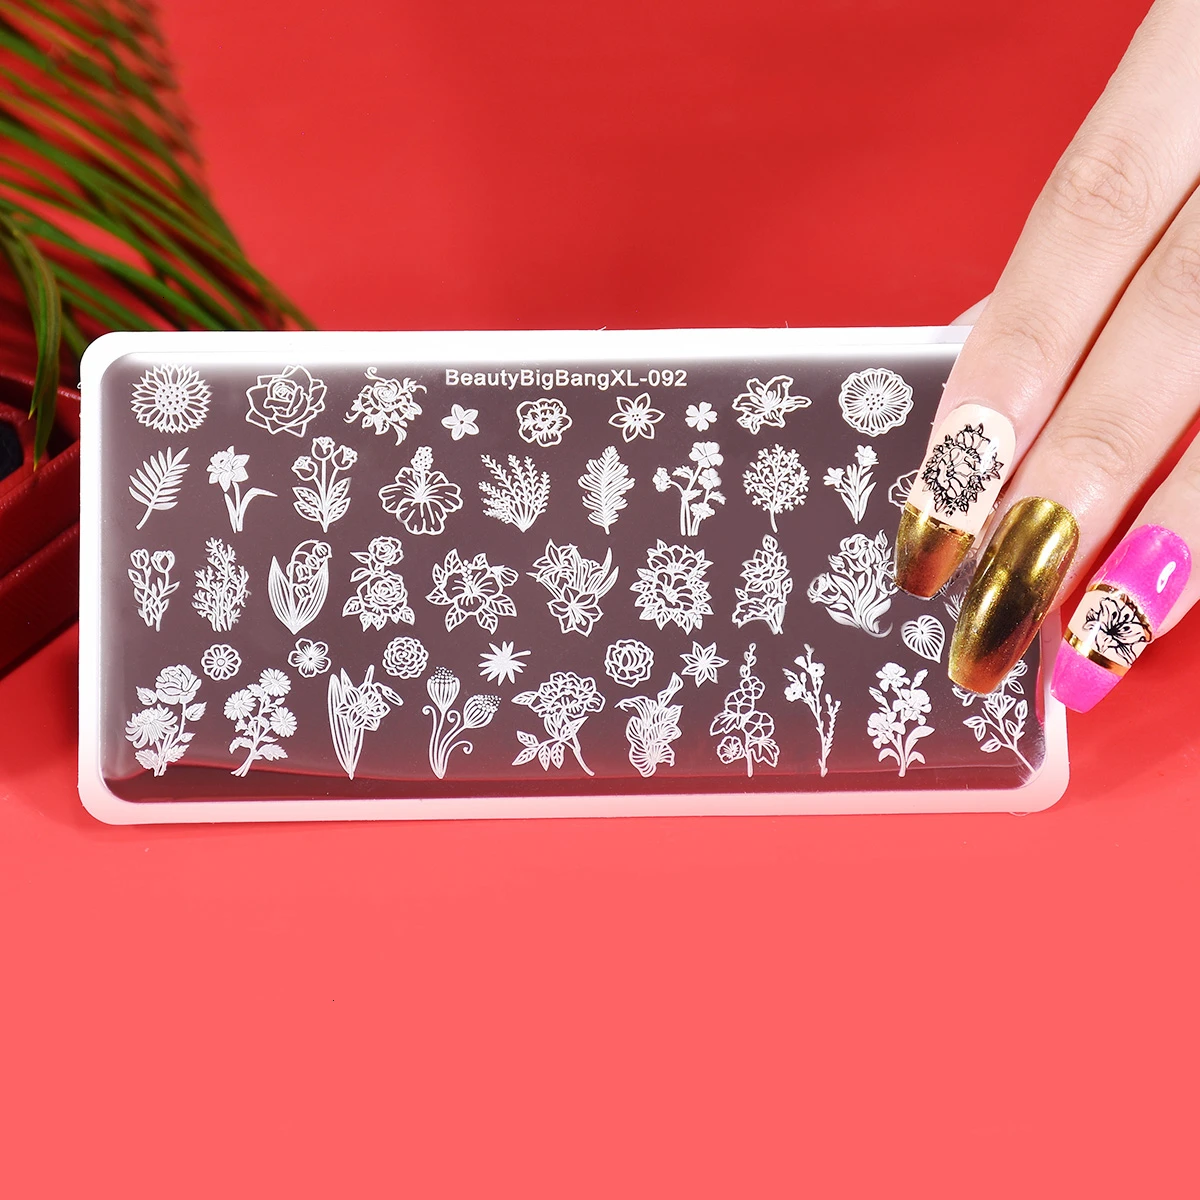 BeautyBigBang штамповки для ногтей пластины цветок тема травяной лист формочка из нержавеющей стали печать рисунок для нейл-арта штамповки шаблон XL-092